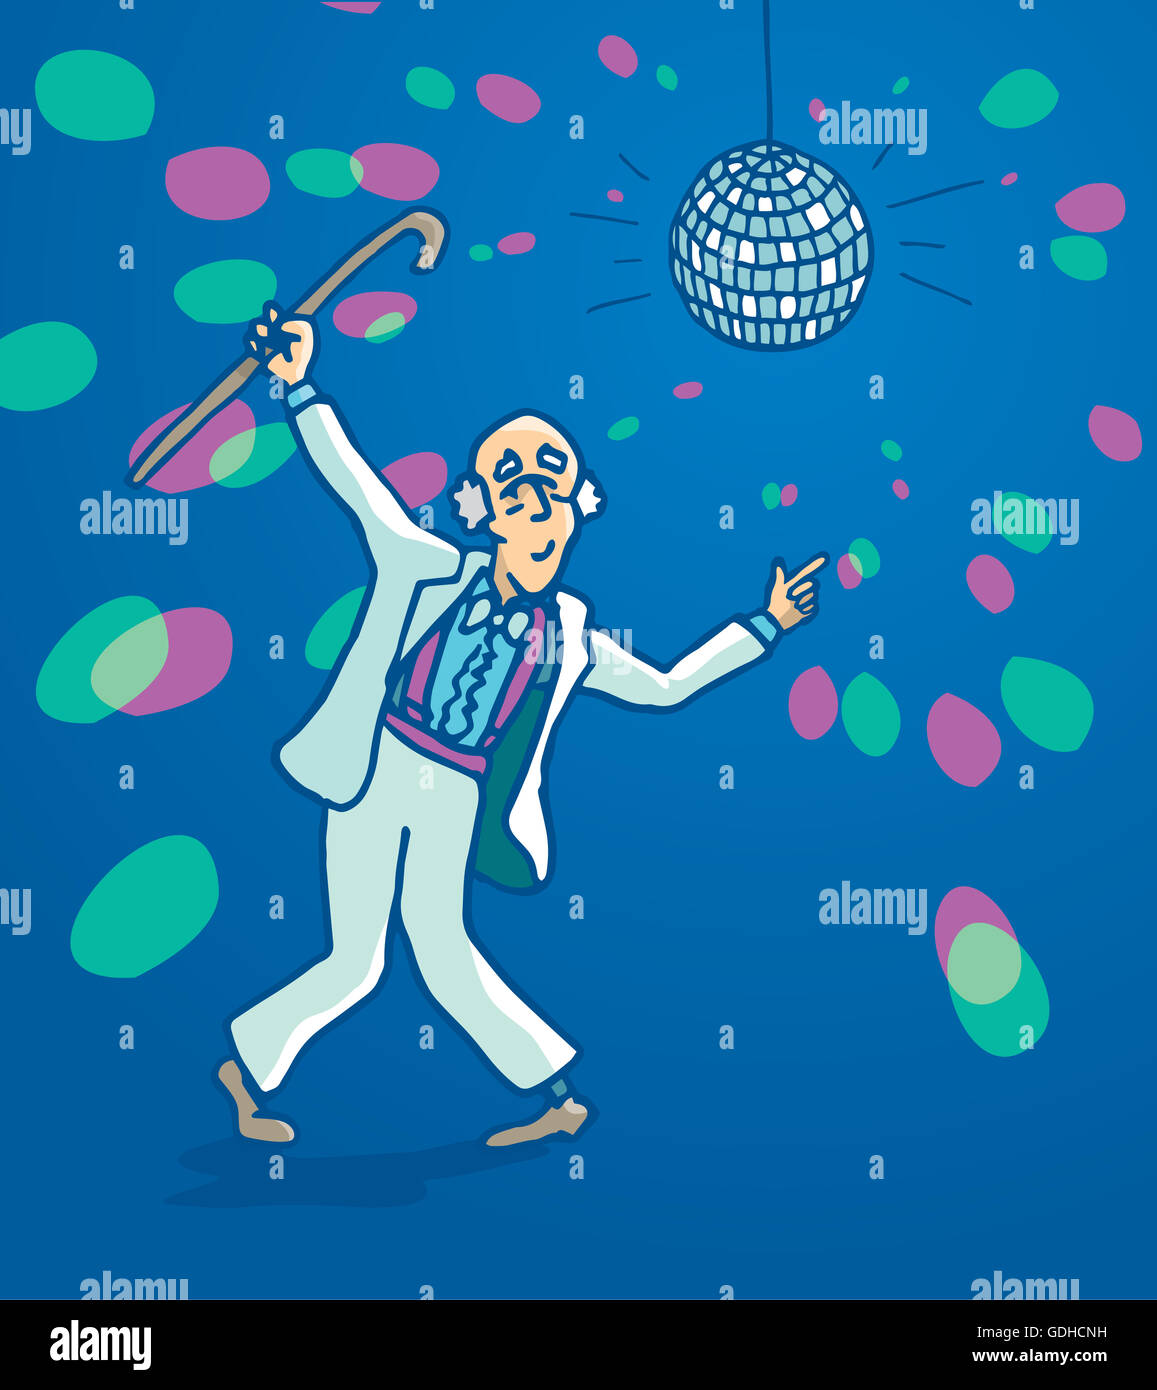 Cartoon illustration d'un homme drôle senior en discothèque Banque D'Images